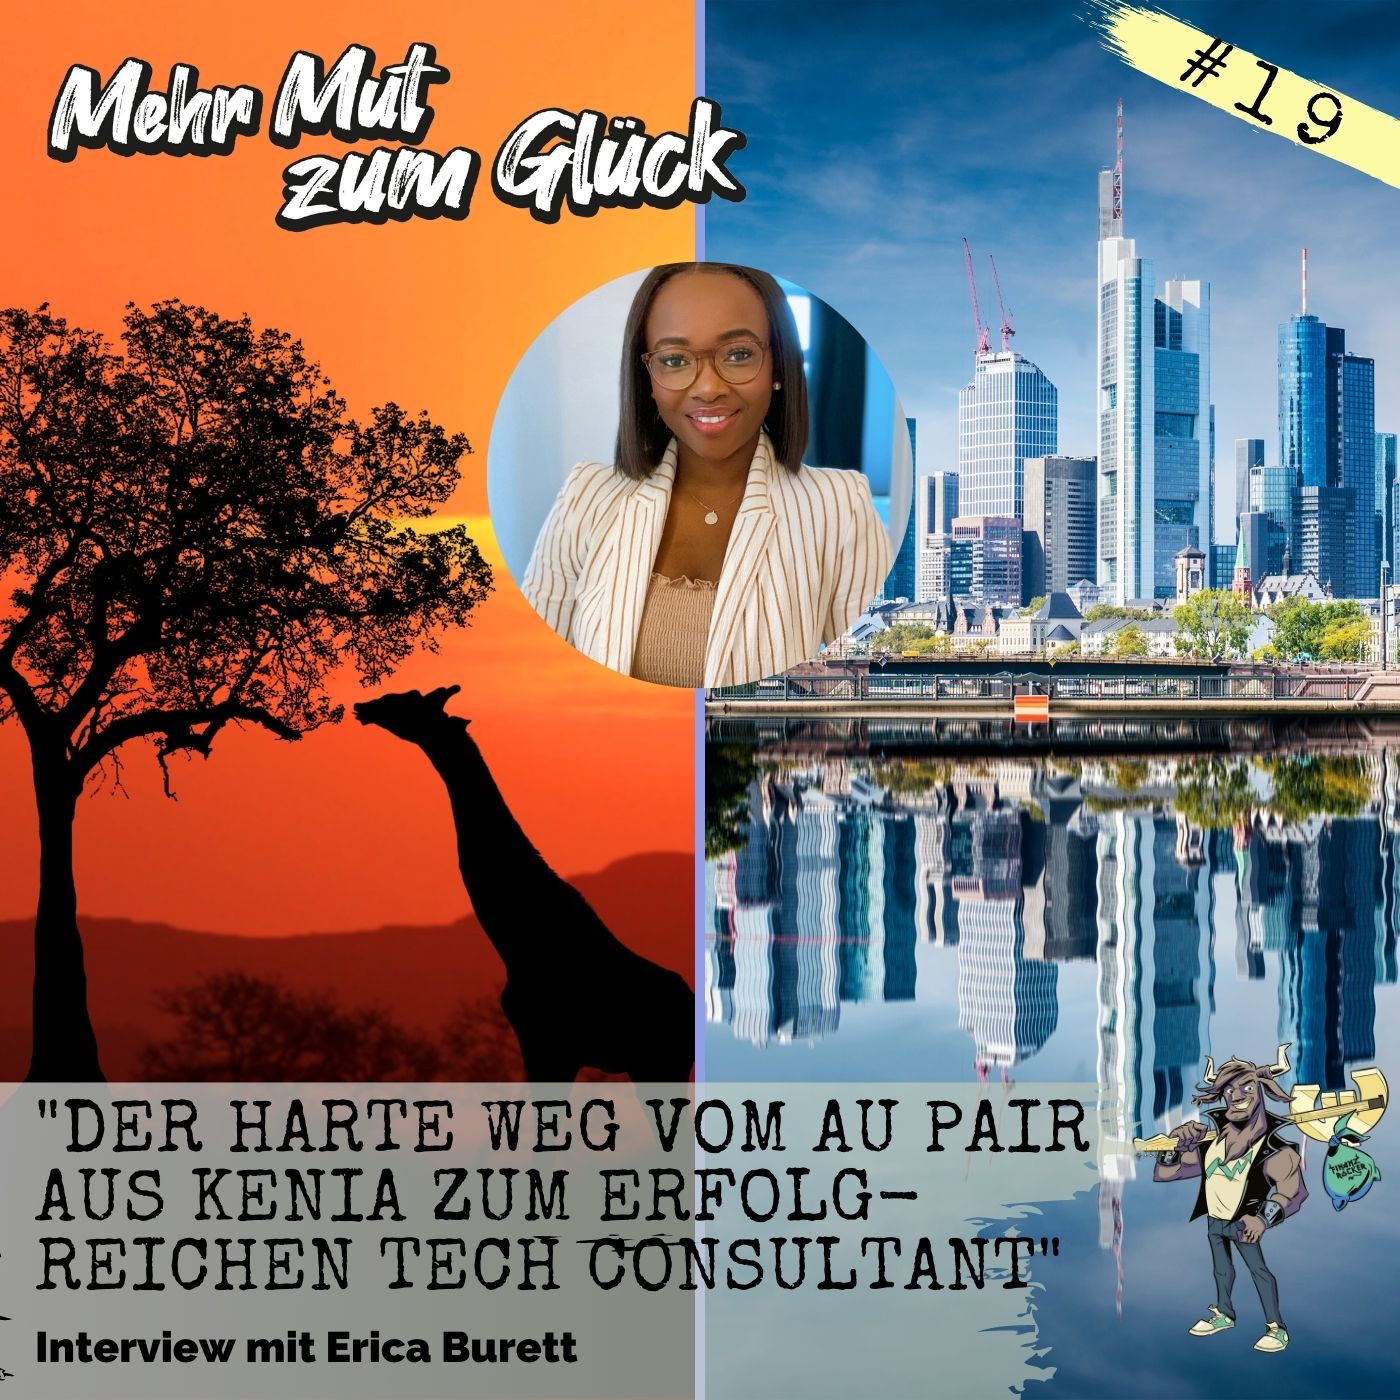 Folge 19: ”Der harte Weg vom Au Pair aus Kenia zum erfolgreichen Tech Consultant” - Interview mit Erica Burett